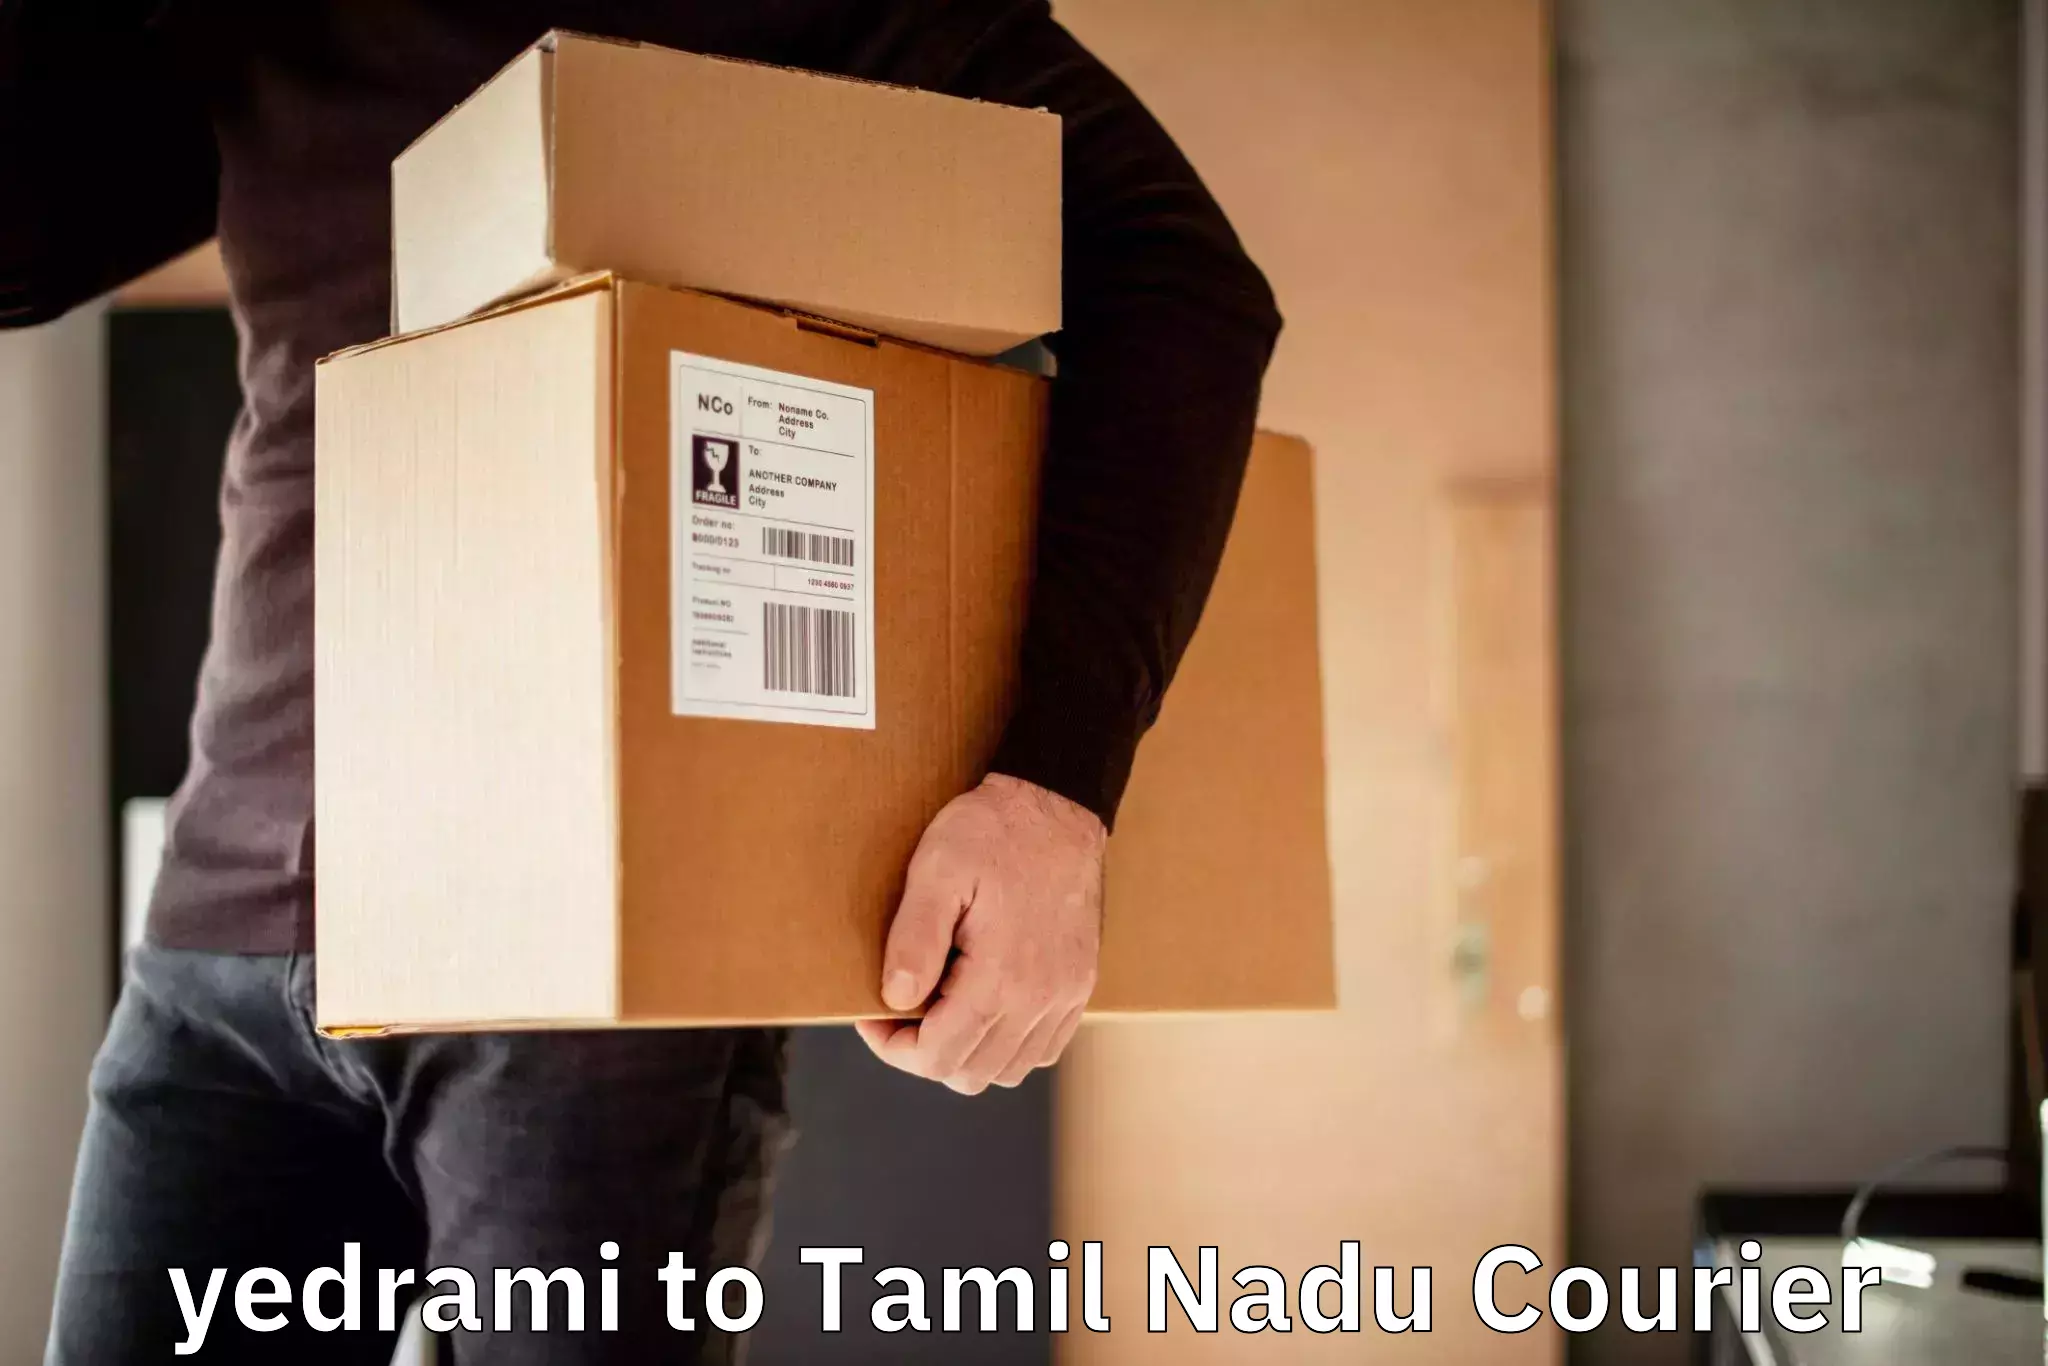 Customer-focused courier yedrami to Tiruvannamalai